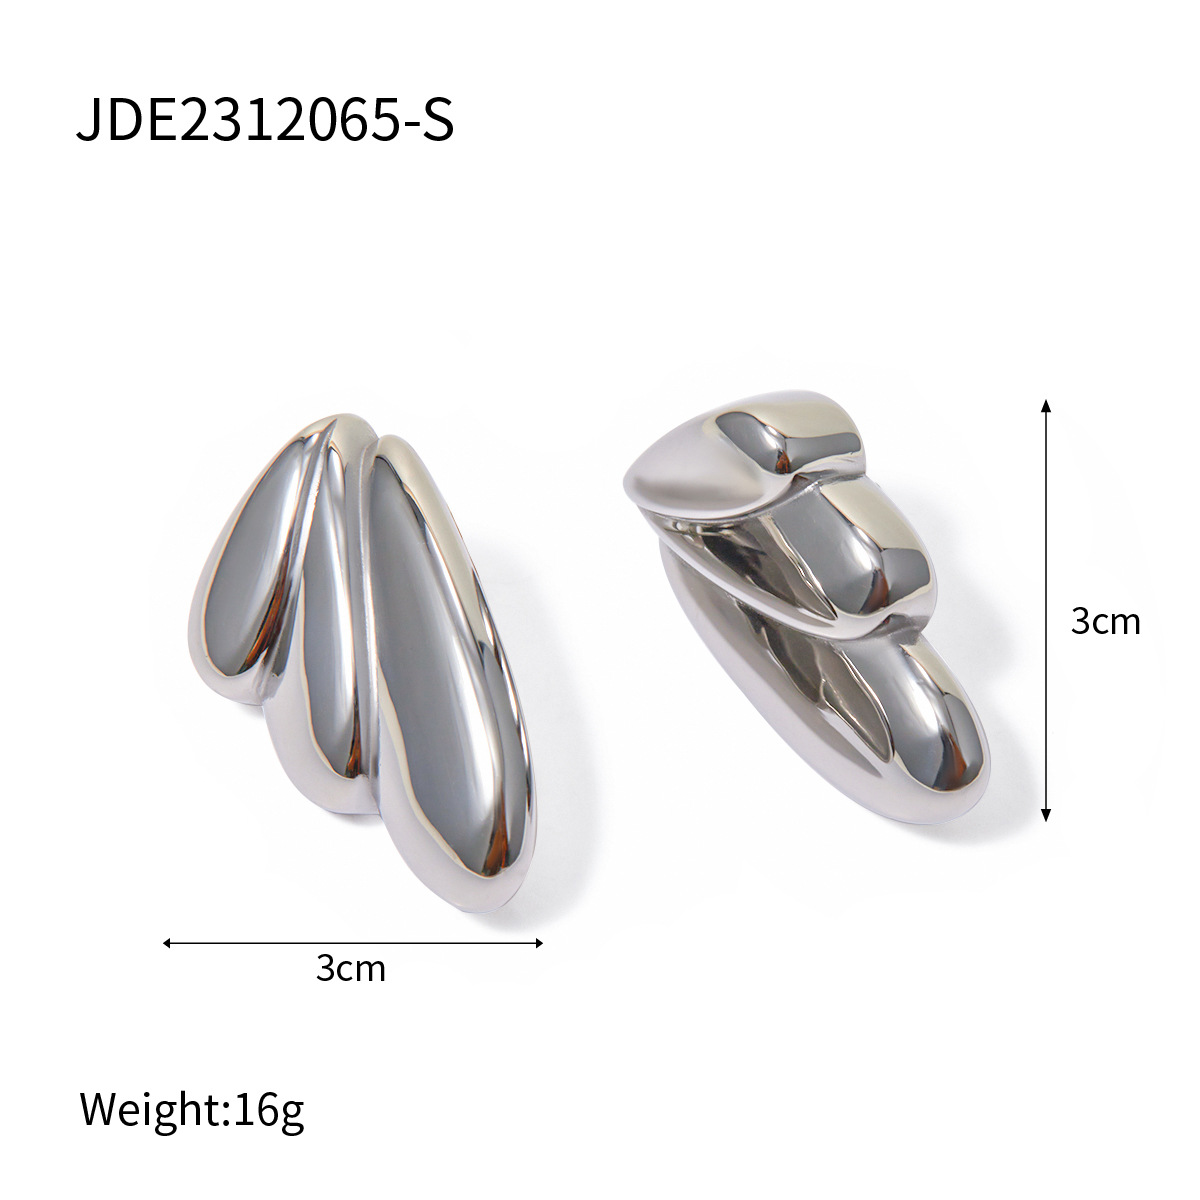 2:JDE2312065-S